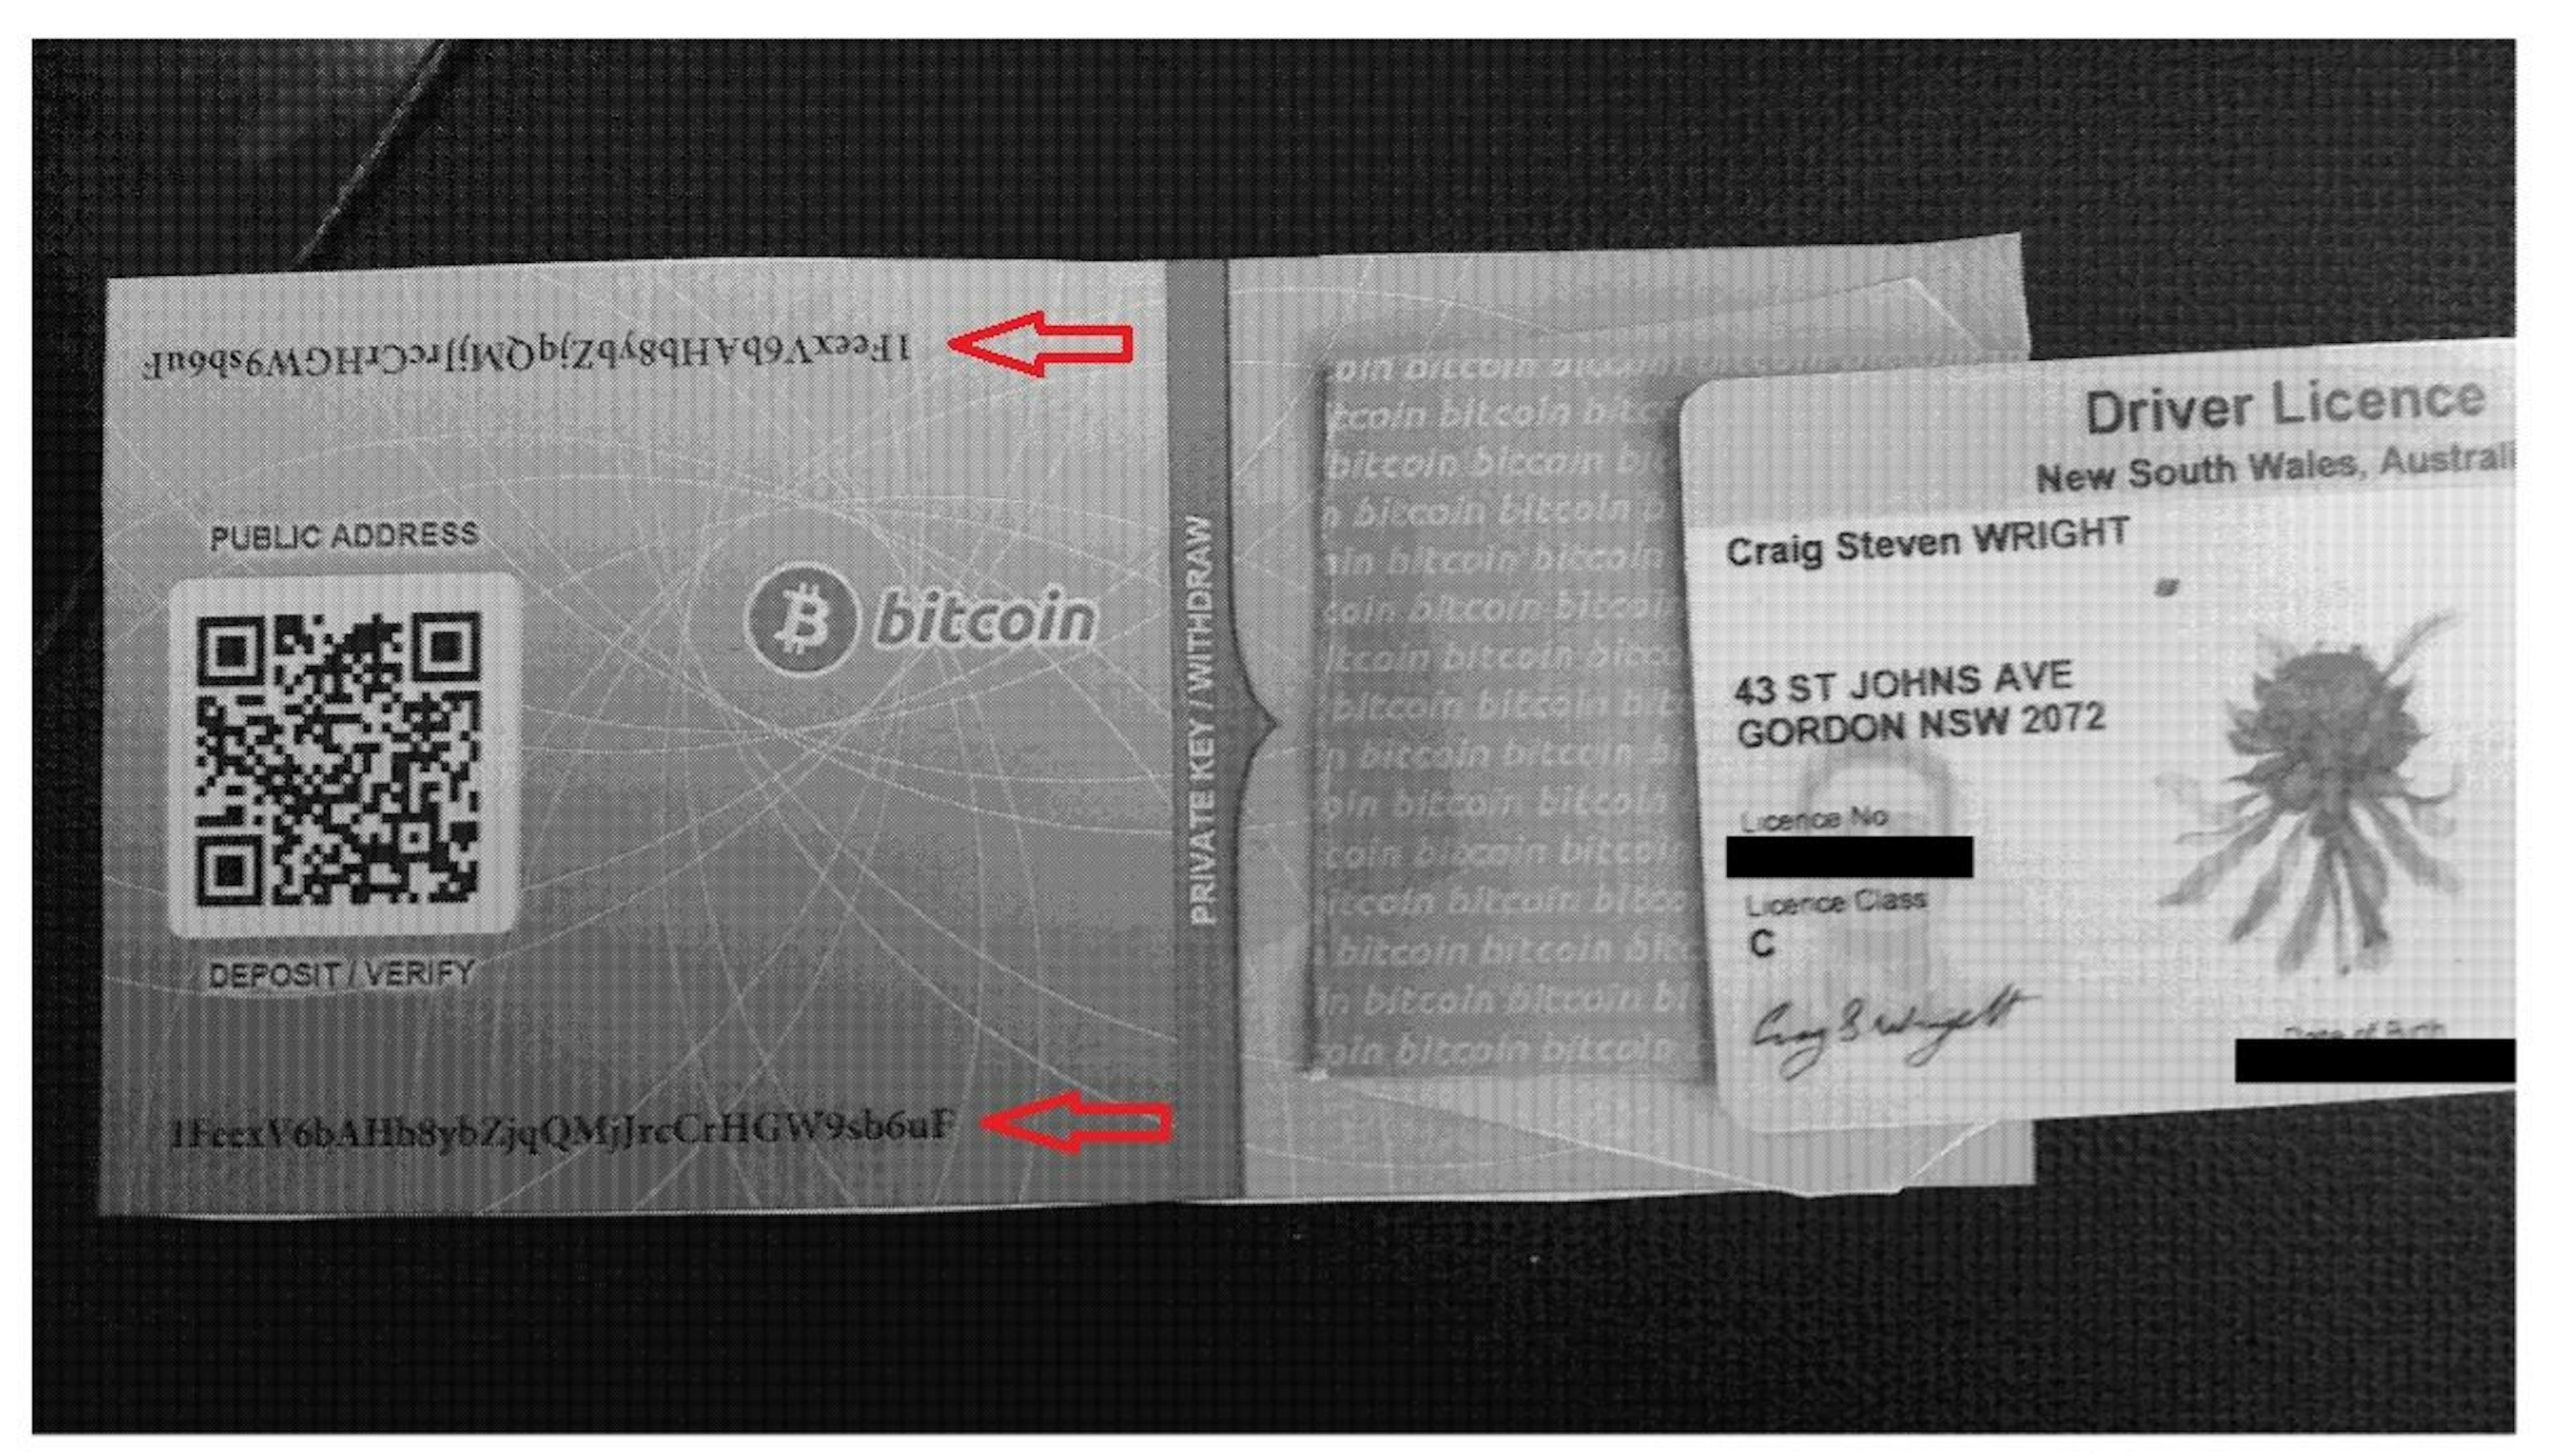 克雷格·赖特 (Craig Wright) 围绕 1Feex 地址制作了大量伪造品。这个假纸钱包就是其中之一。